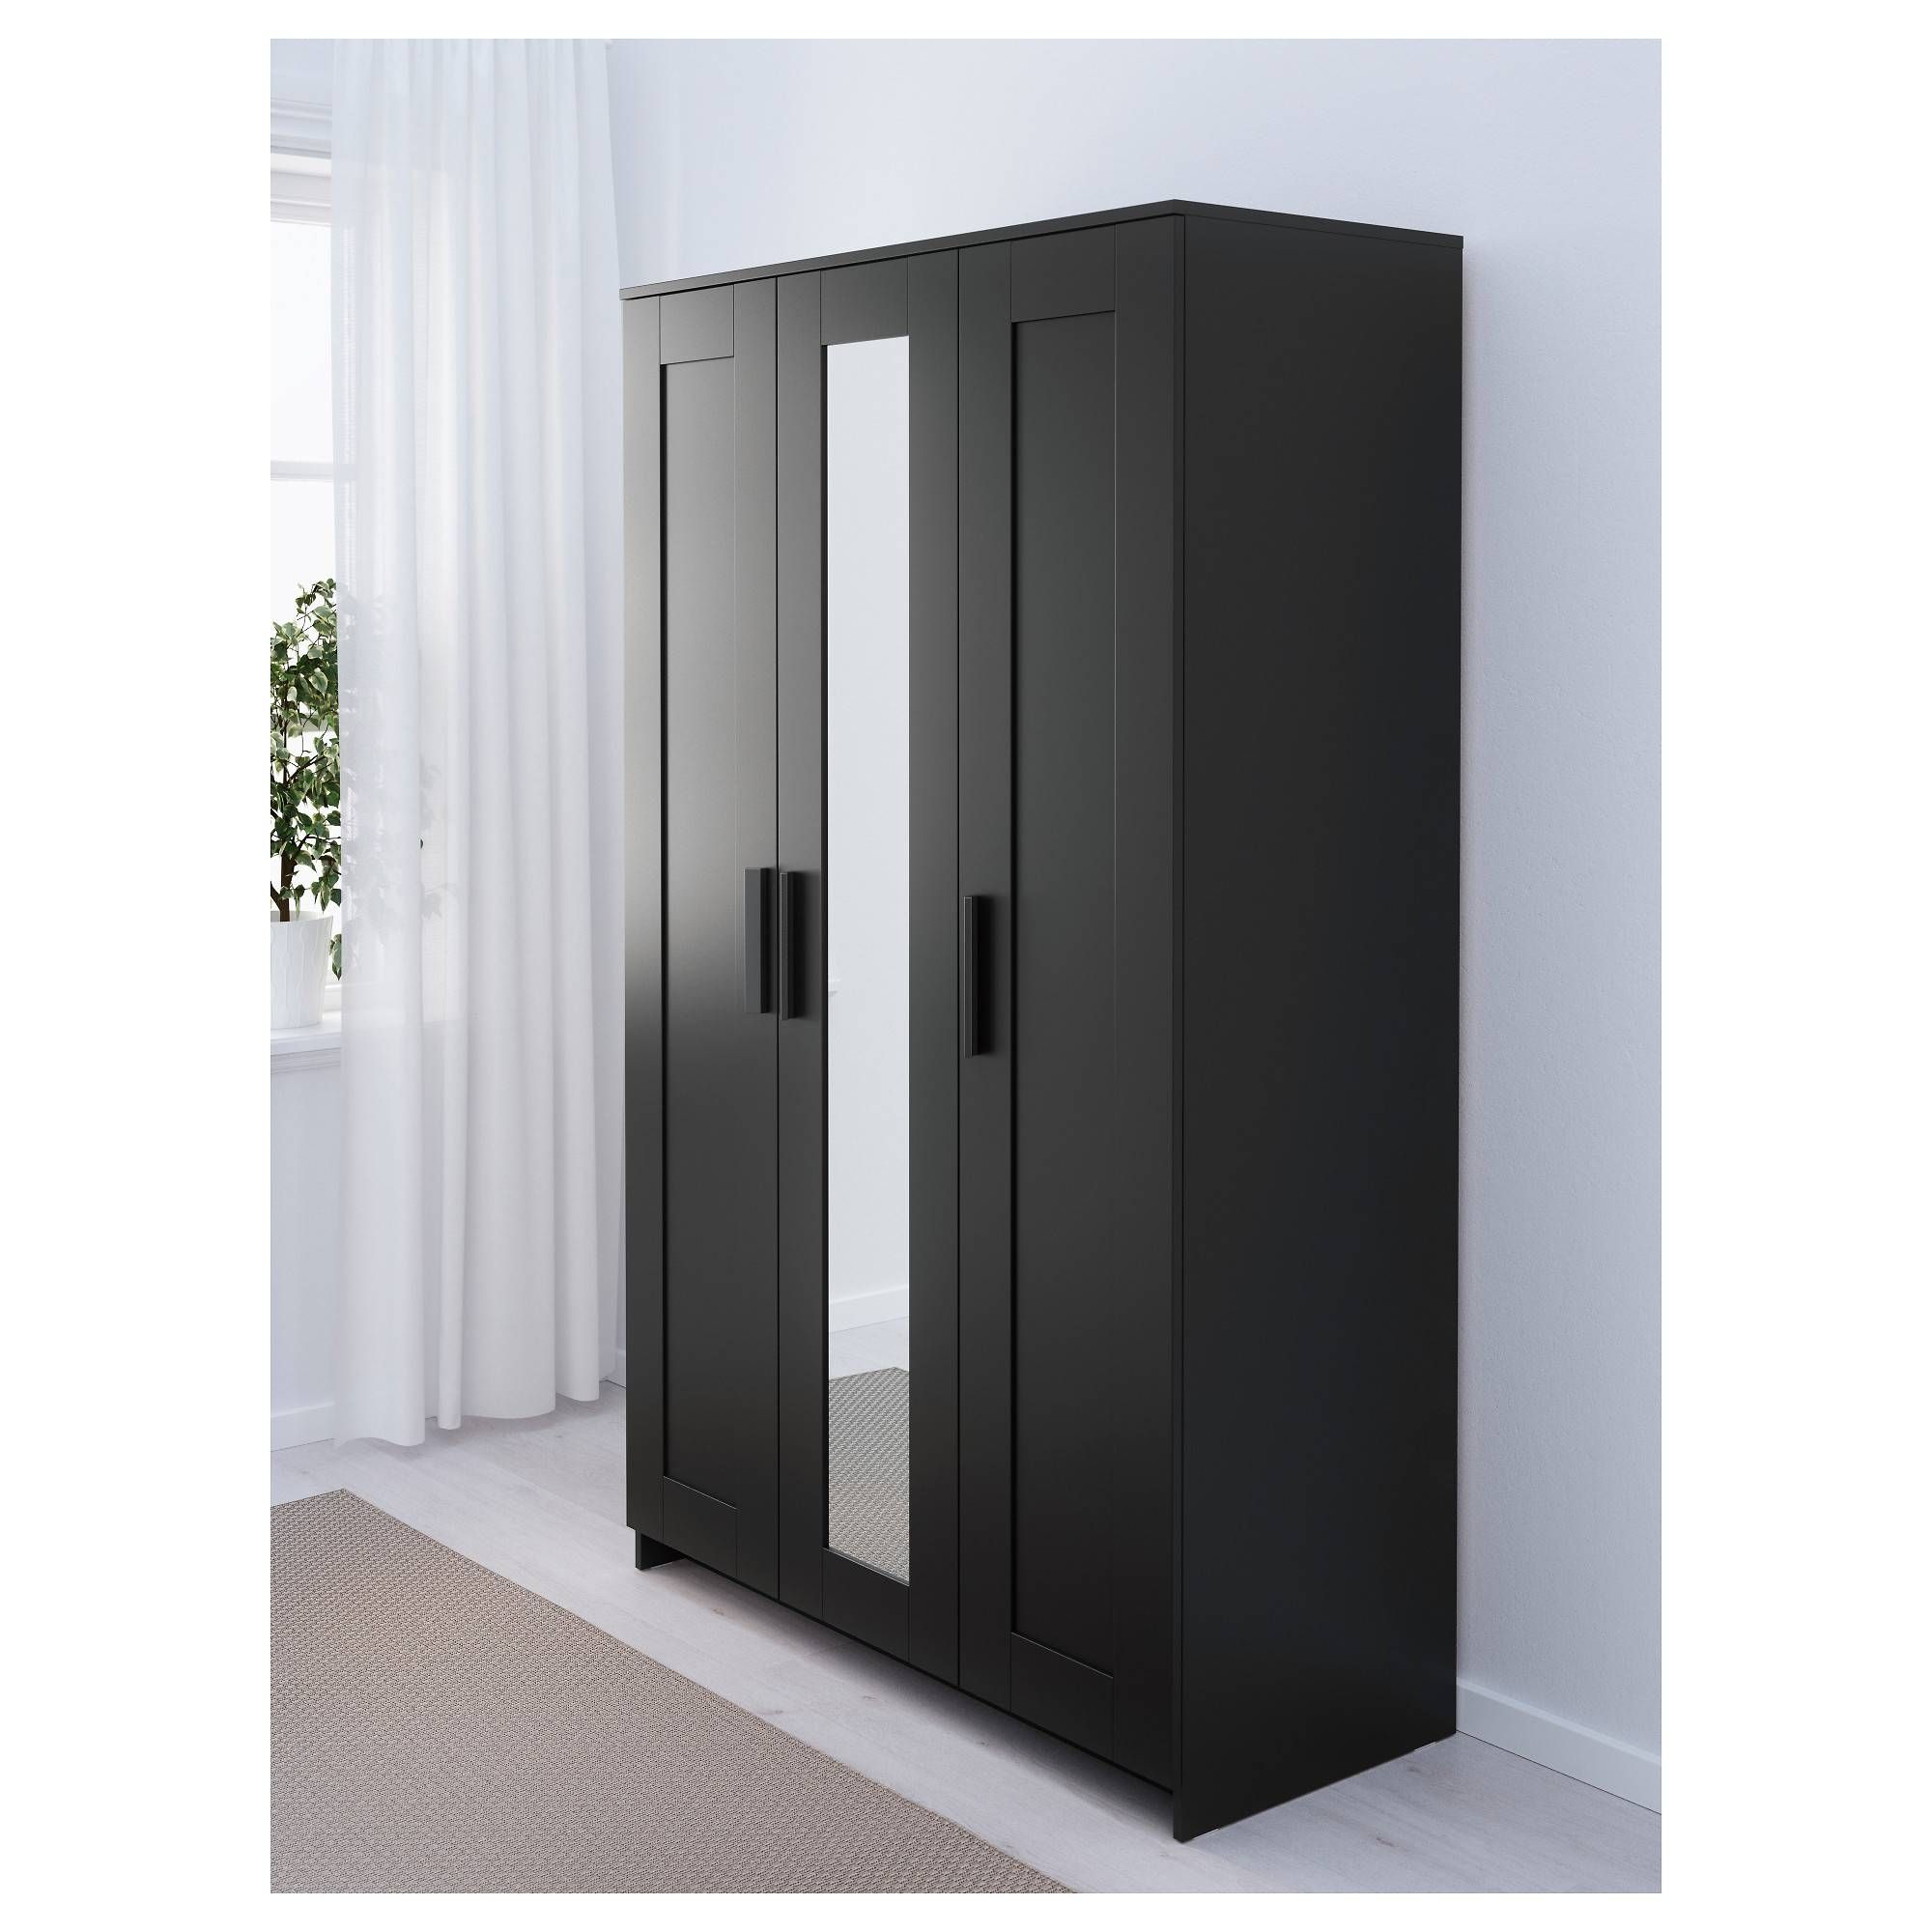 Brimnes Wardrobe With 3 Doors – White – Ikea With Regard To 3 Door Wardrobes (View 2 of 15)